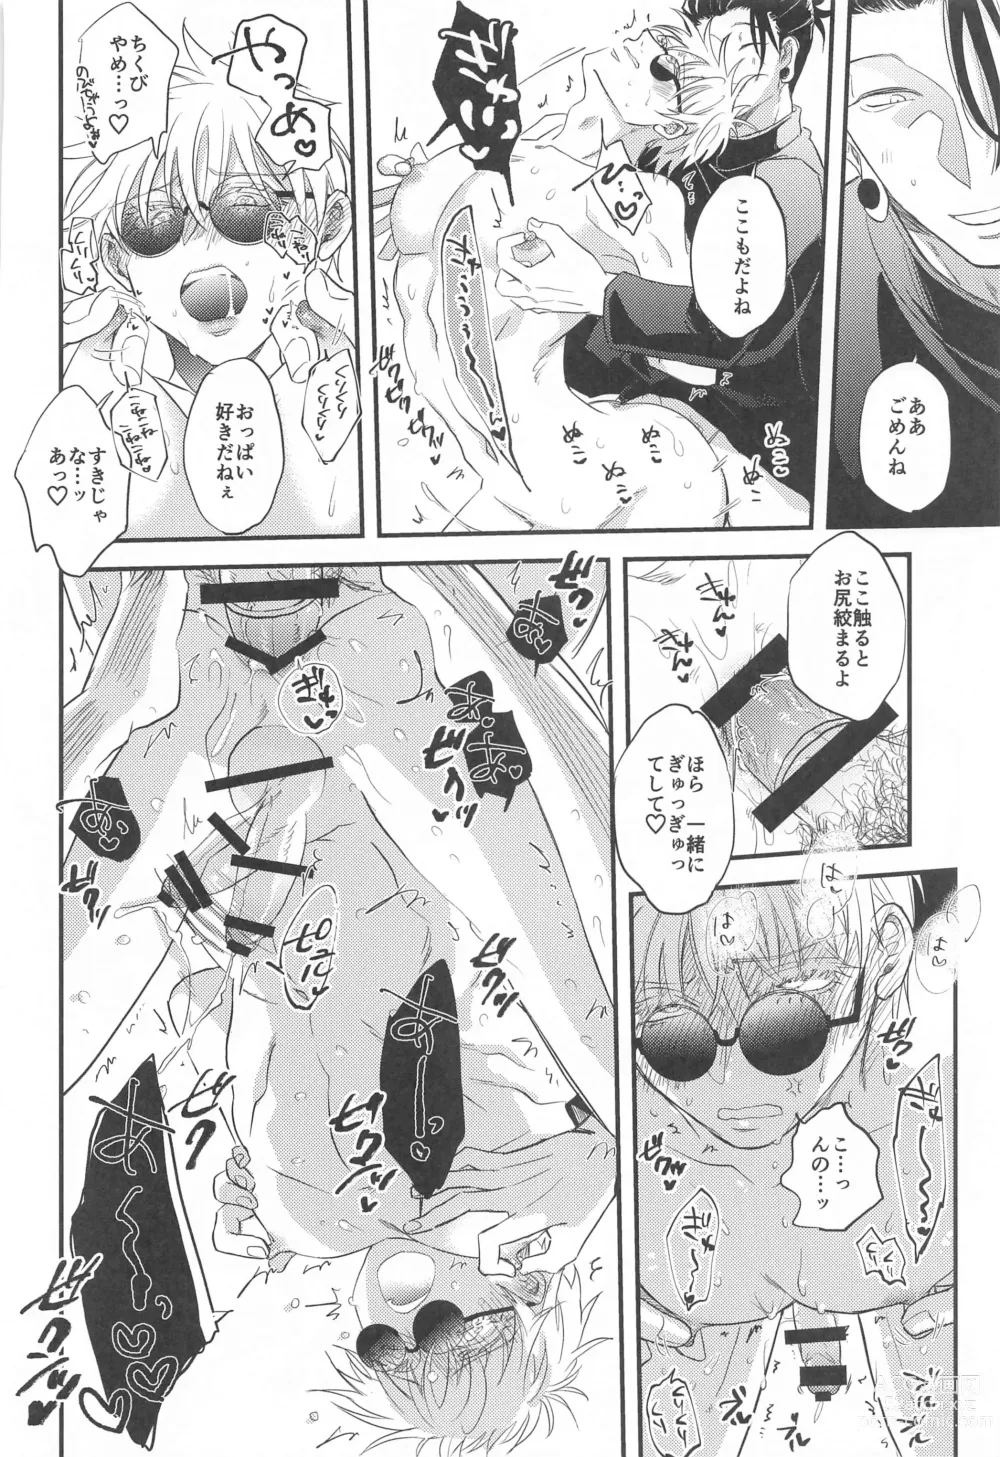 Page 23 of doujinshi Saikyou  x Kimeseku  x Sokuochi 2-koma